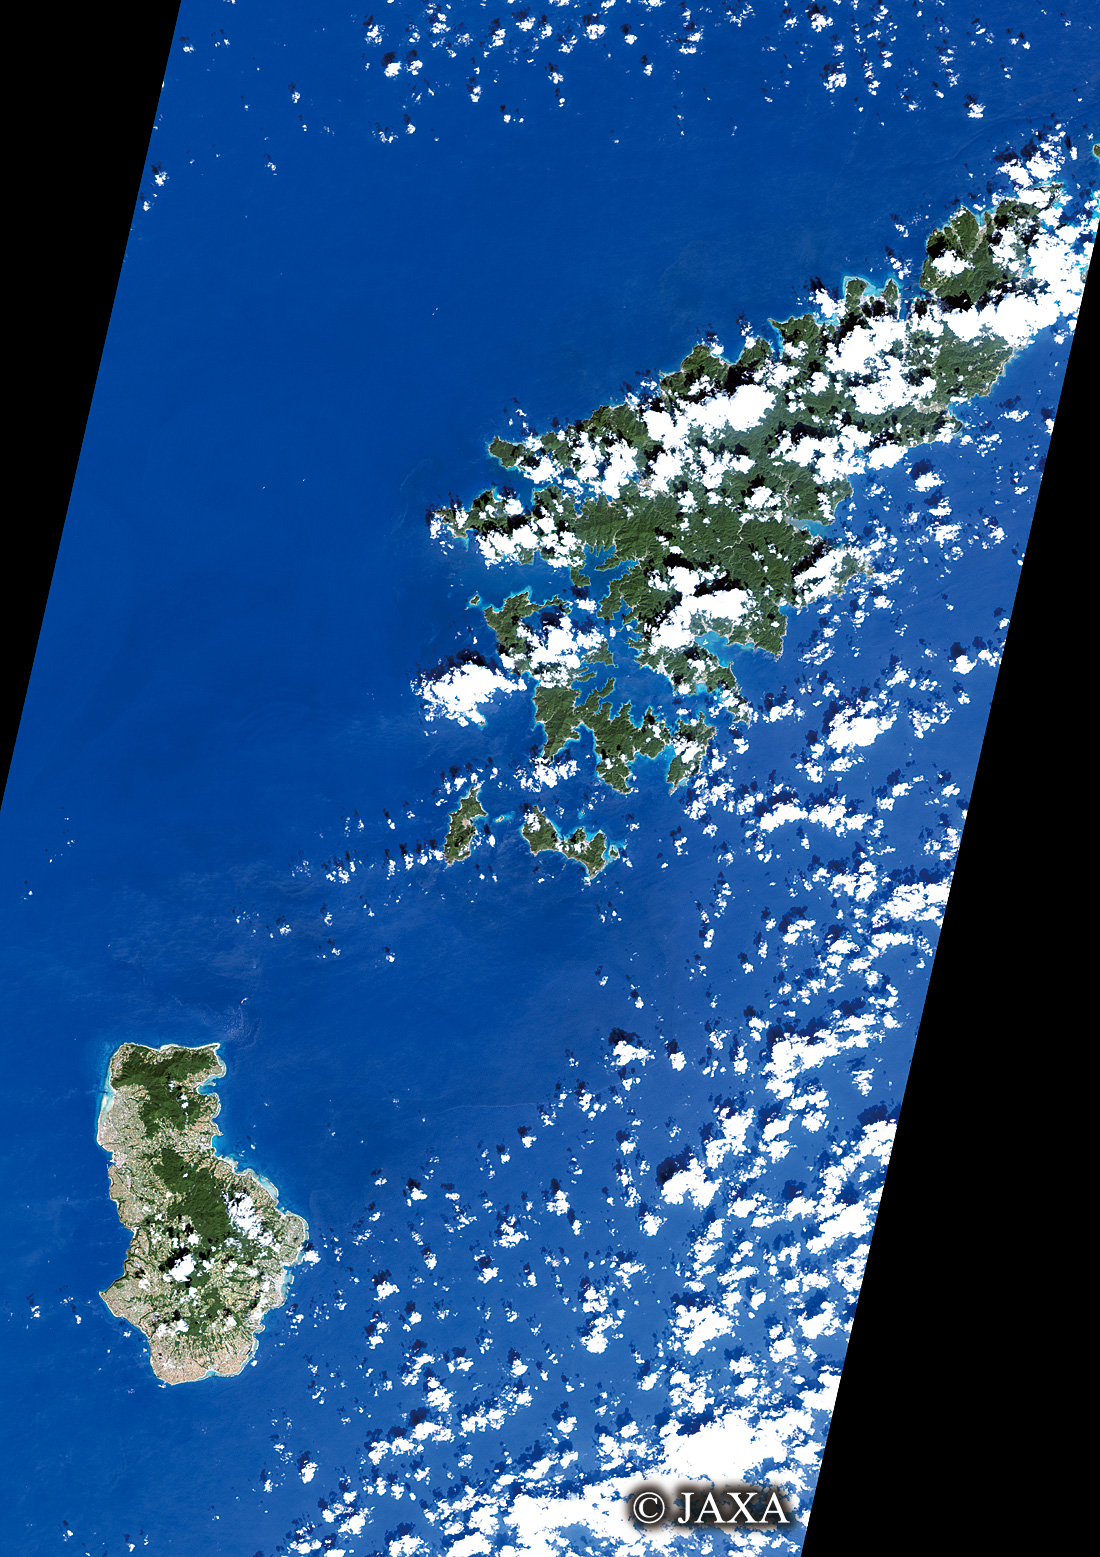 だいちから見た日本の都市 奄美大島・徳之島:衛星画像